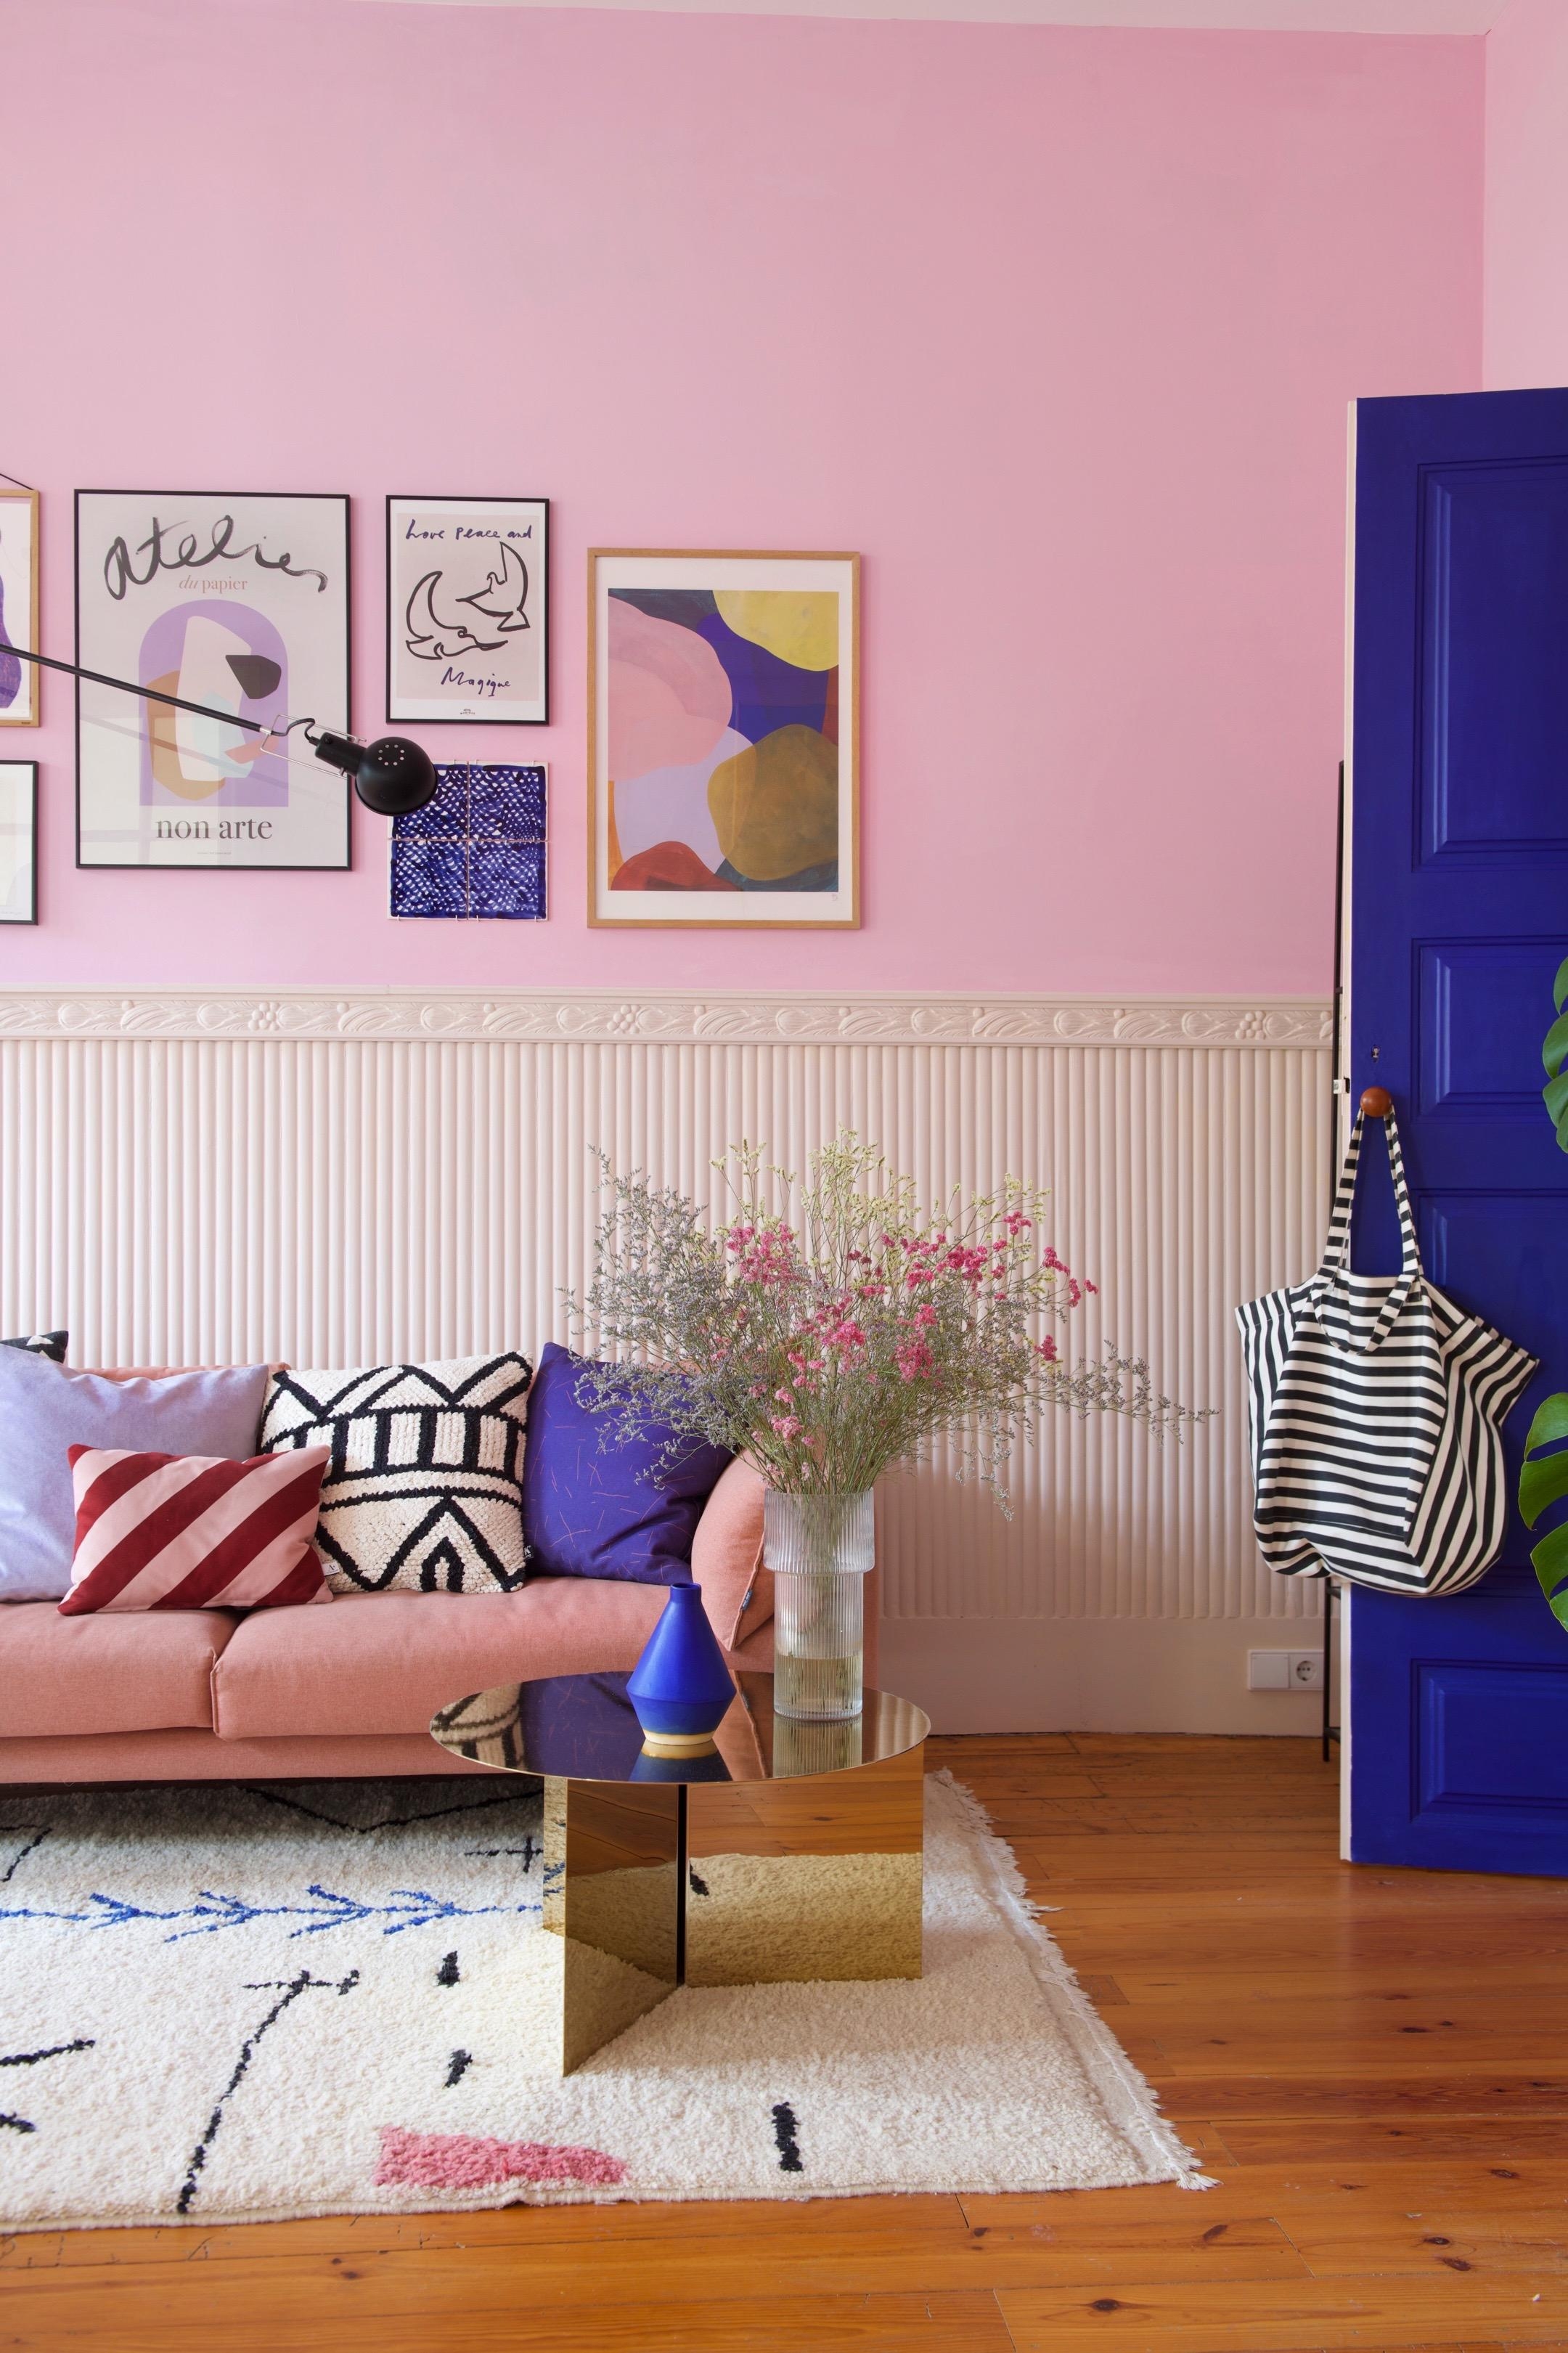 Neue Wandfarbe in unserem portugiesischen Wohnzimmer 🌈
#wohnzimmer #color #pastell